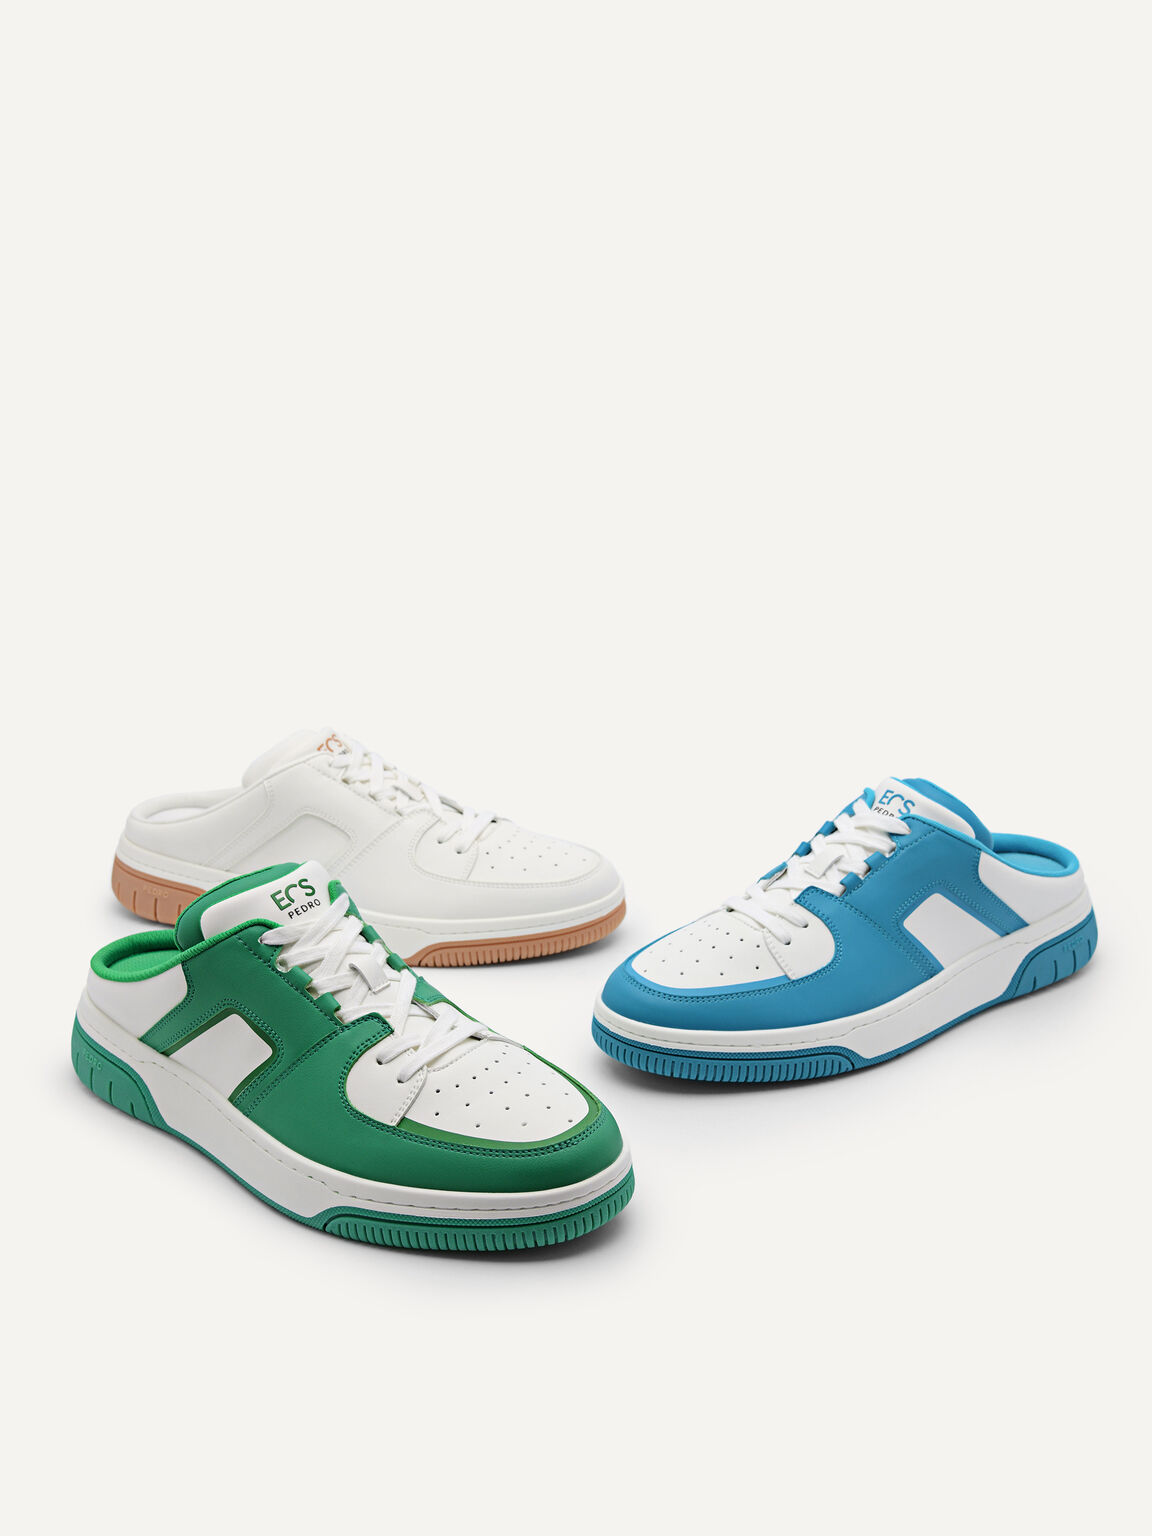 EOS Slip-On Sneakers, Cyan